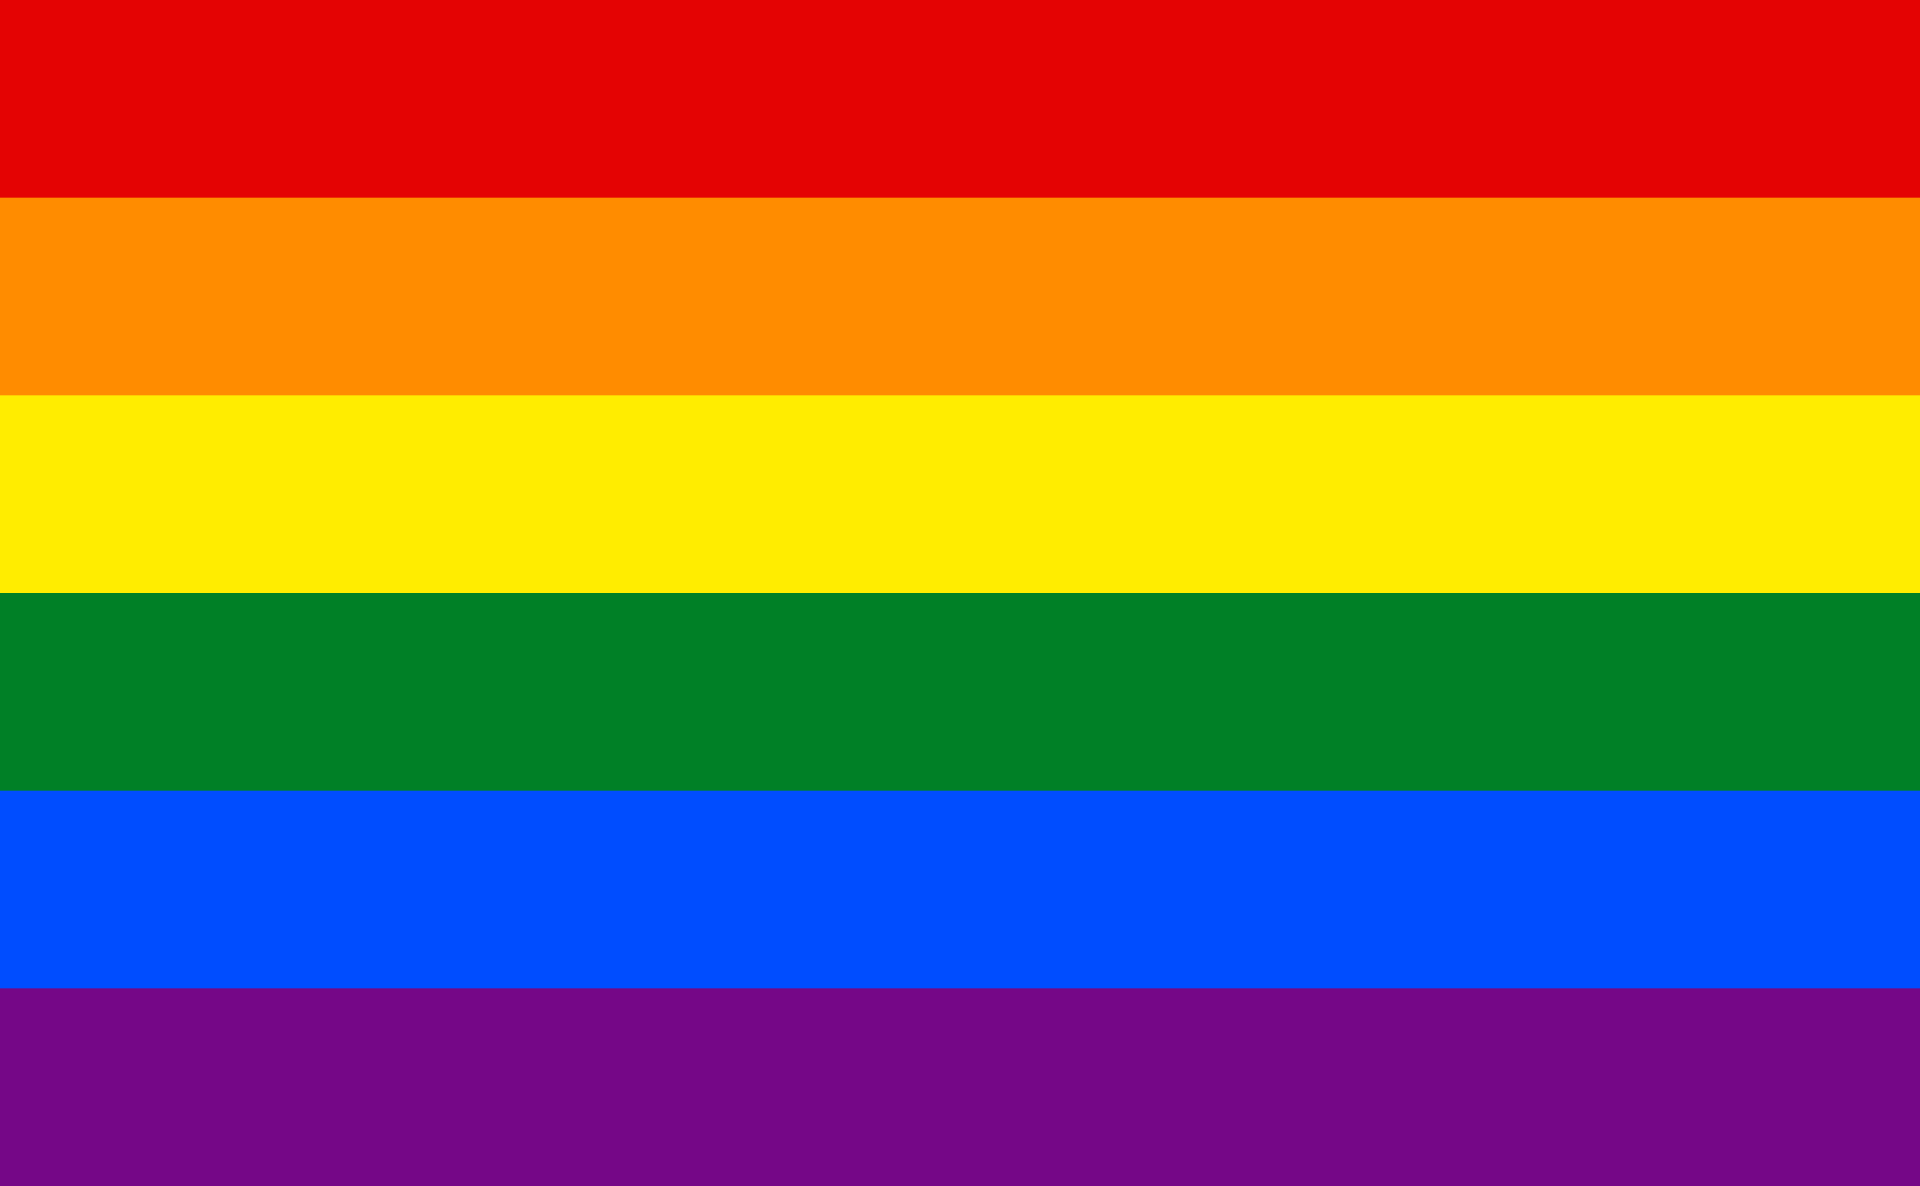 Original Pride Flag, designed in 1979